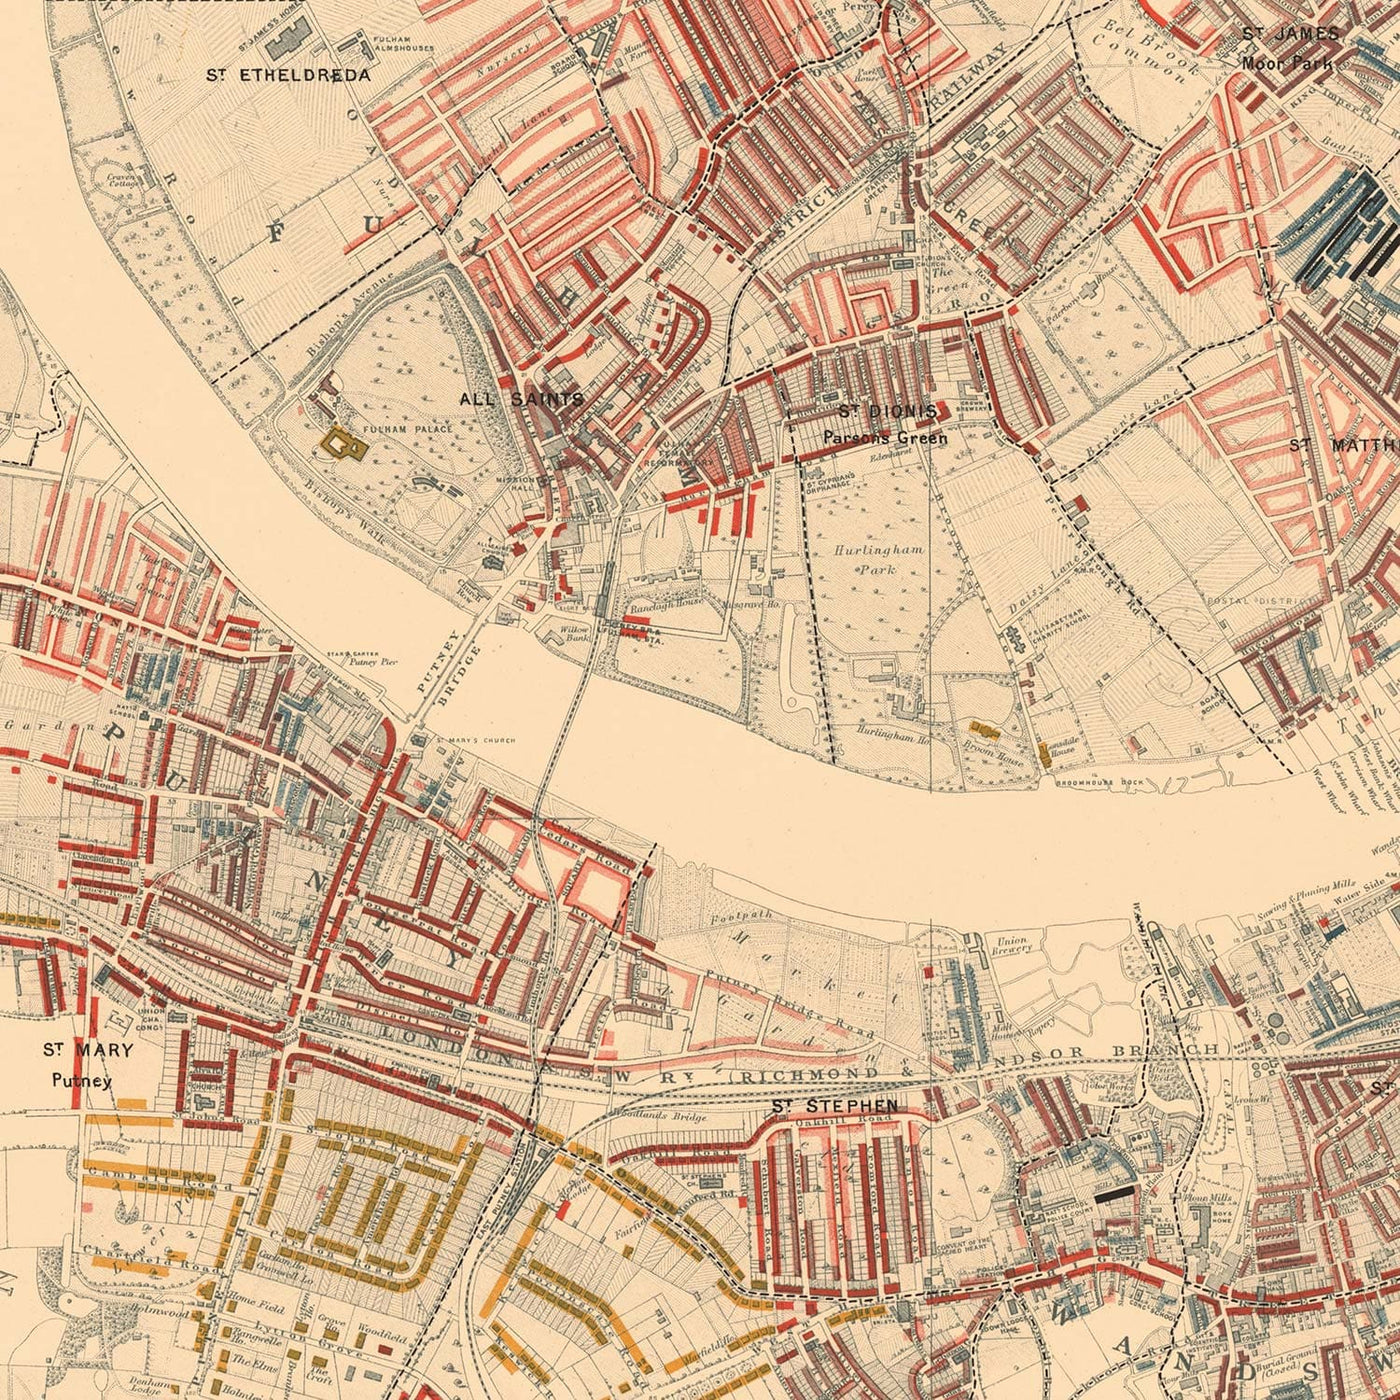 Carte de la pauvreté de Londres 1898-9, district sud-ouest, par Charles Booth - Battersea, Clapham, Putney, Wandsworth - SW6, SW15, SW18, SW10, SW11, SW8, SW4